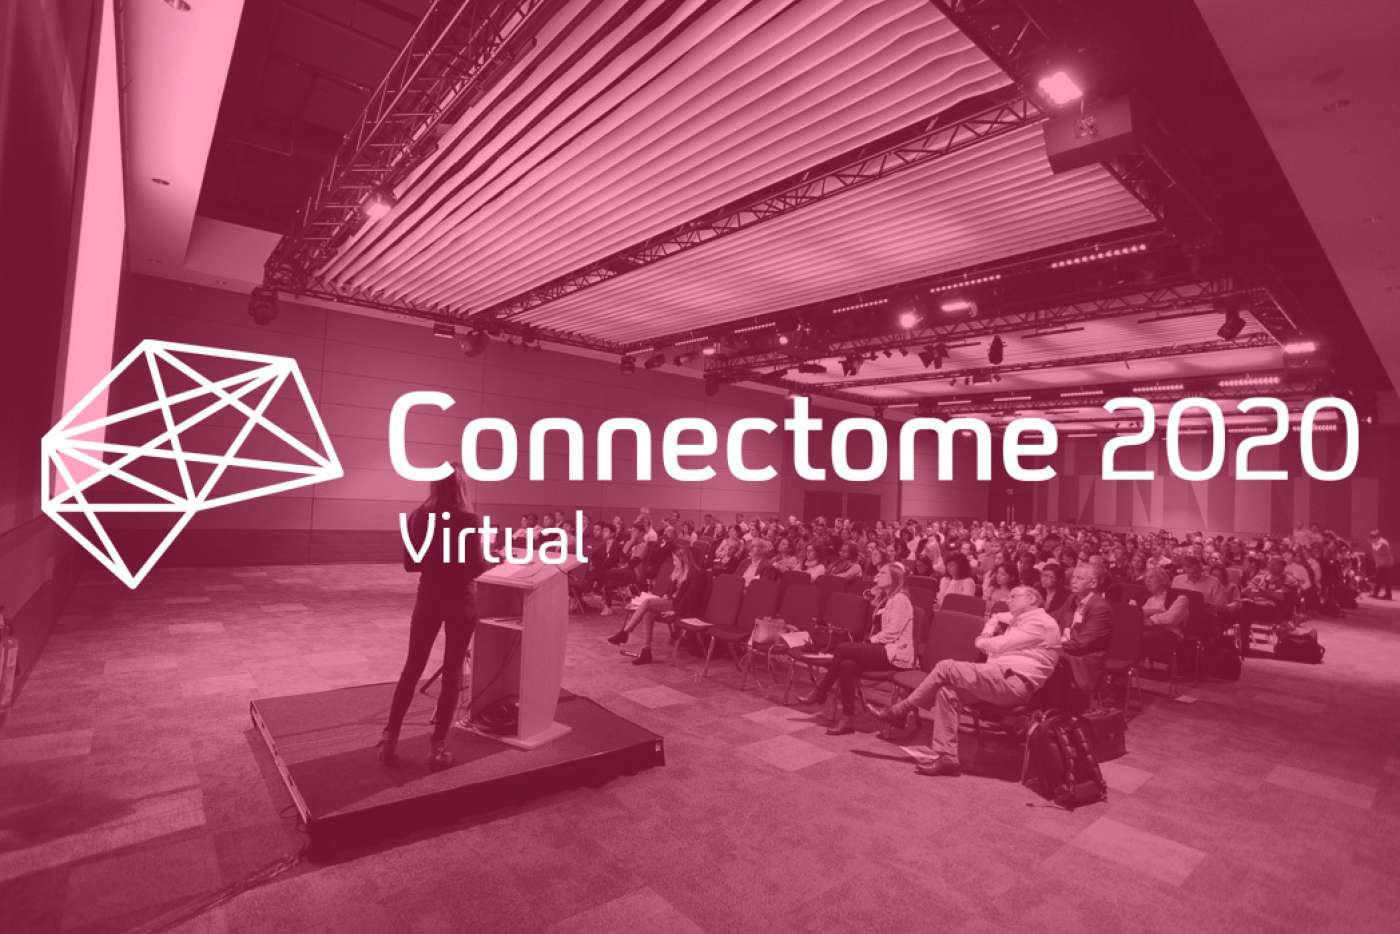 Connectome 2020 Logo Image Virtual